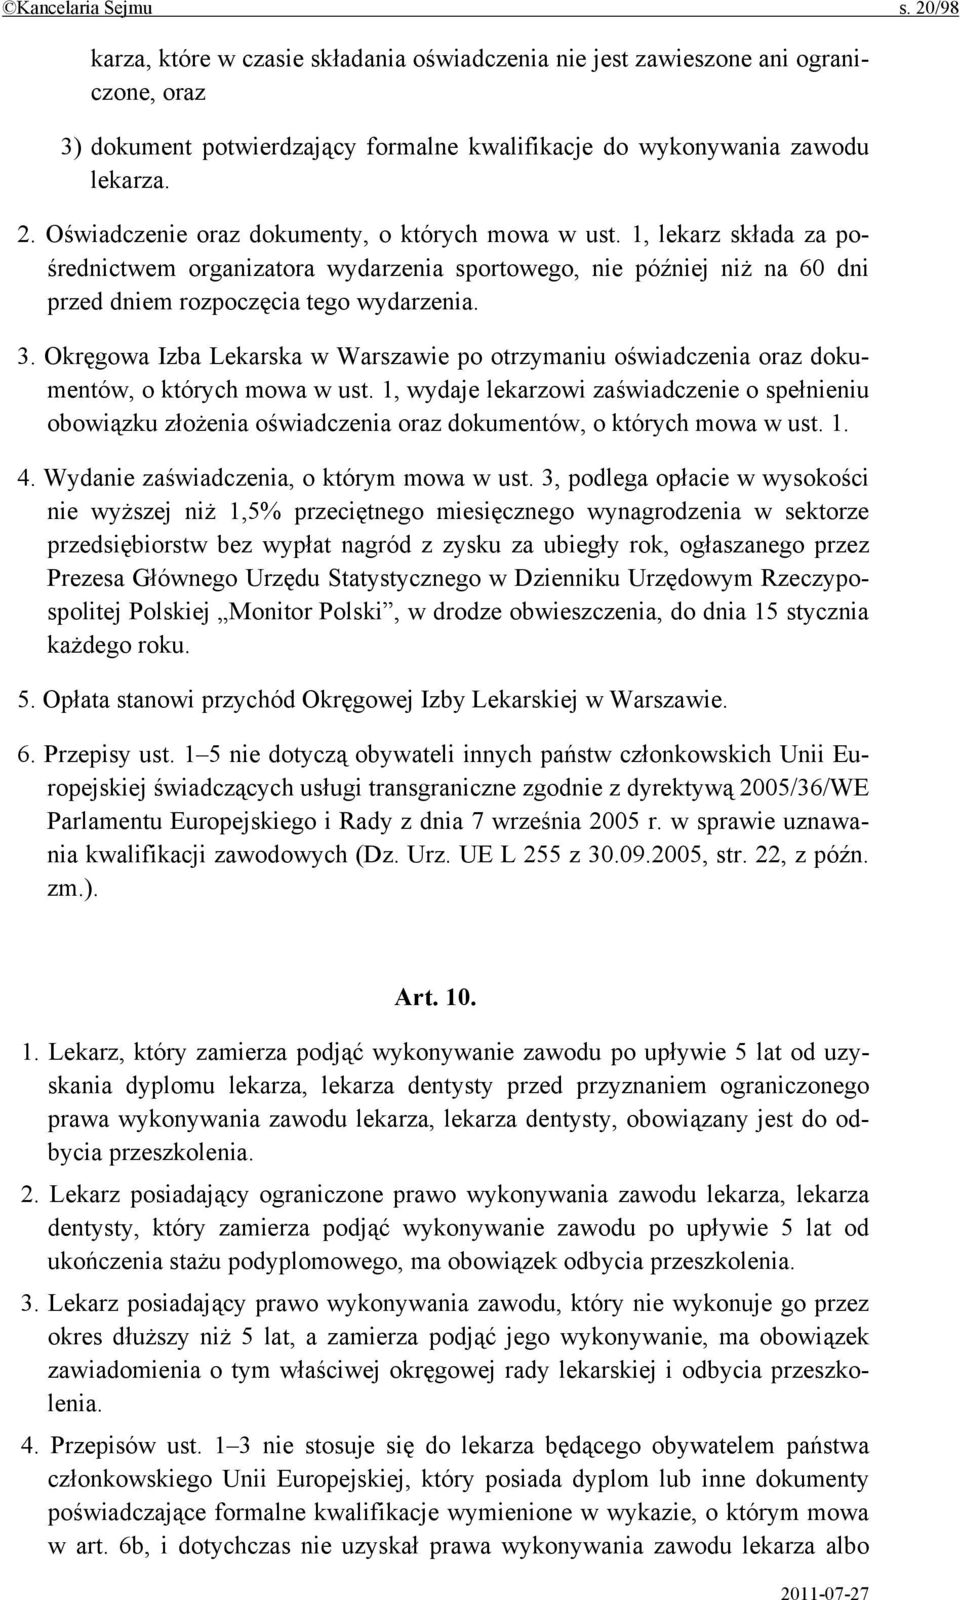 Okręgowa Izba Lekarska w Warszawie po otrzymaniu oświadczenia oraz dokumentów, o których mowa w ust.